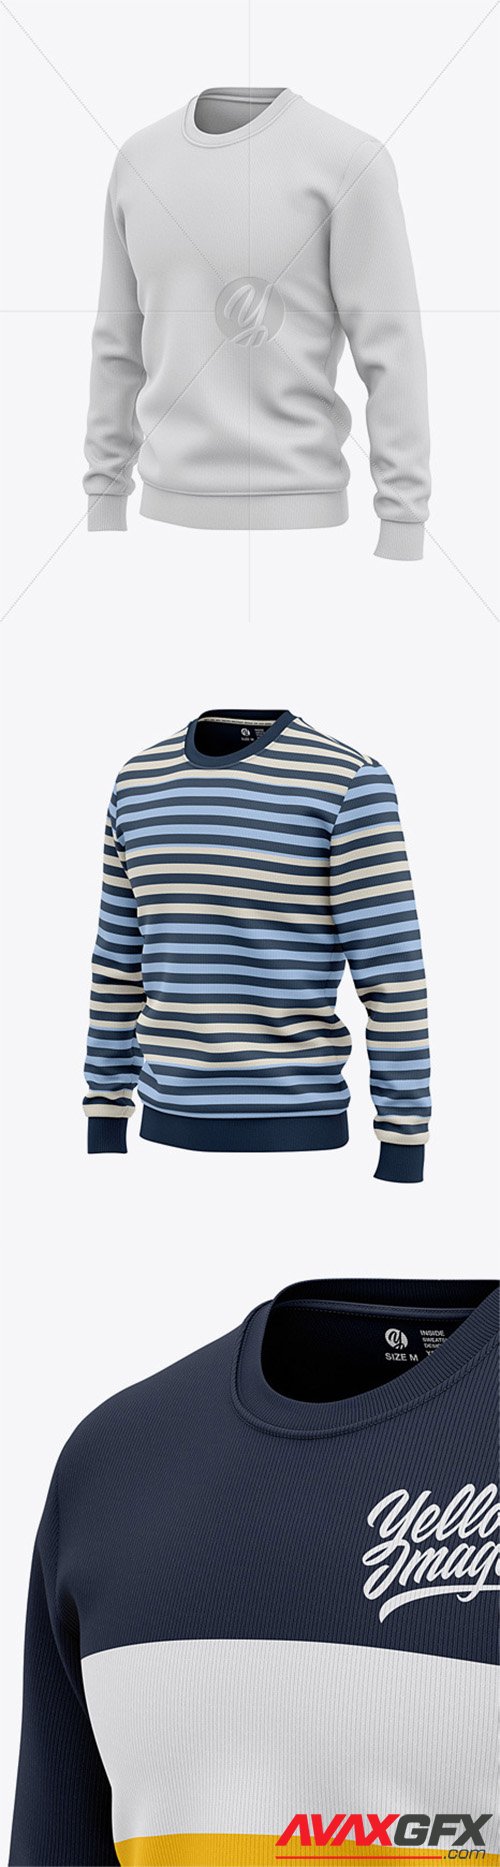 Men's Sweatshirt Mockup - Front Half Side View Of Sweater 55967